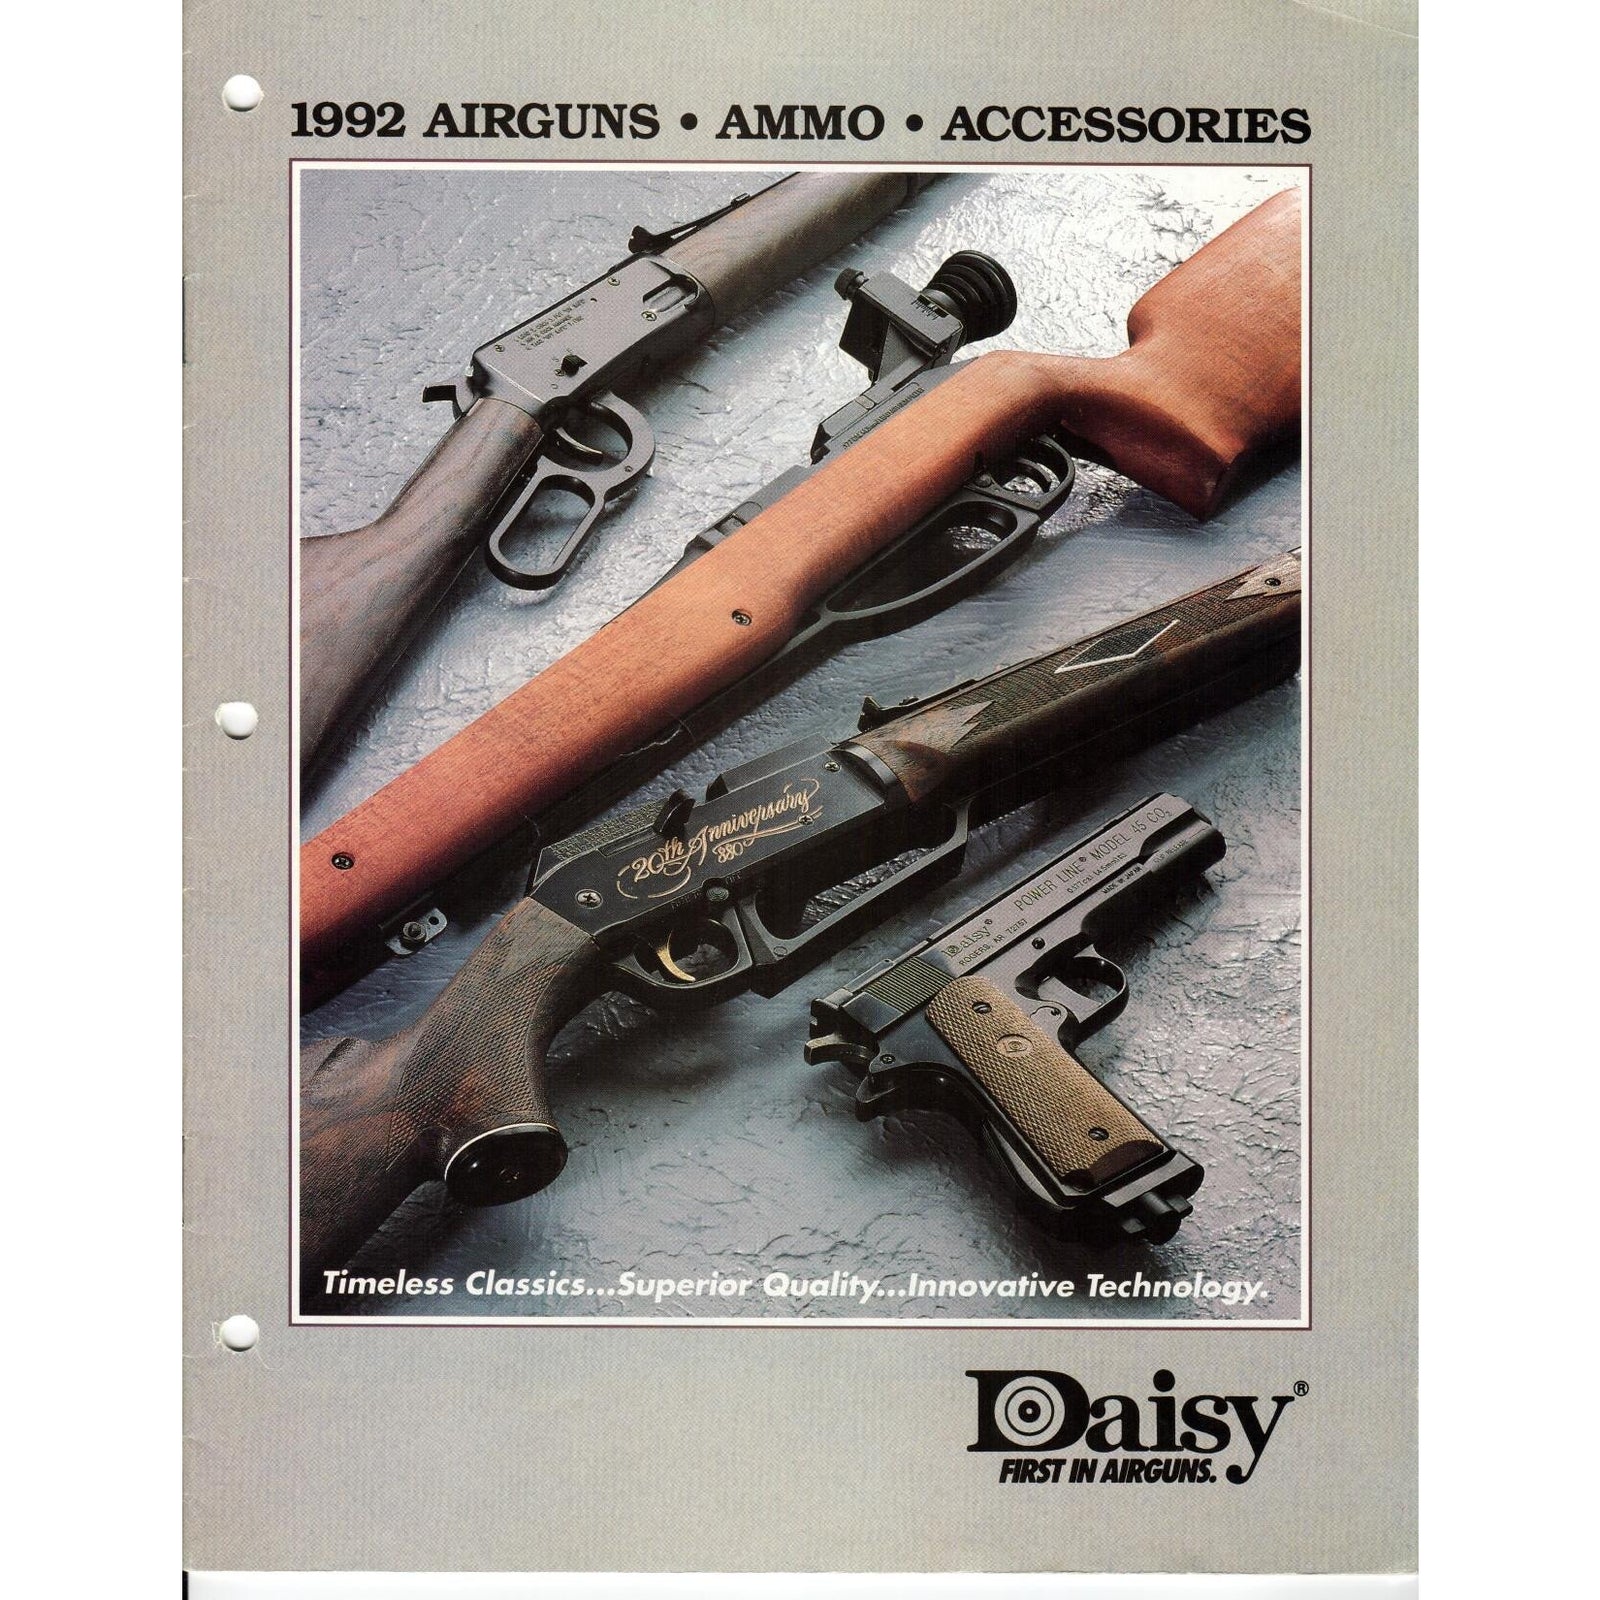 Daisy 1992 Airguns, Ammo & Accessories